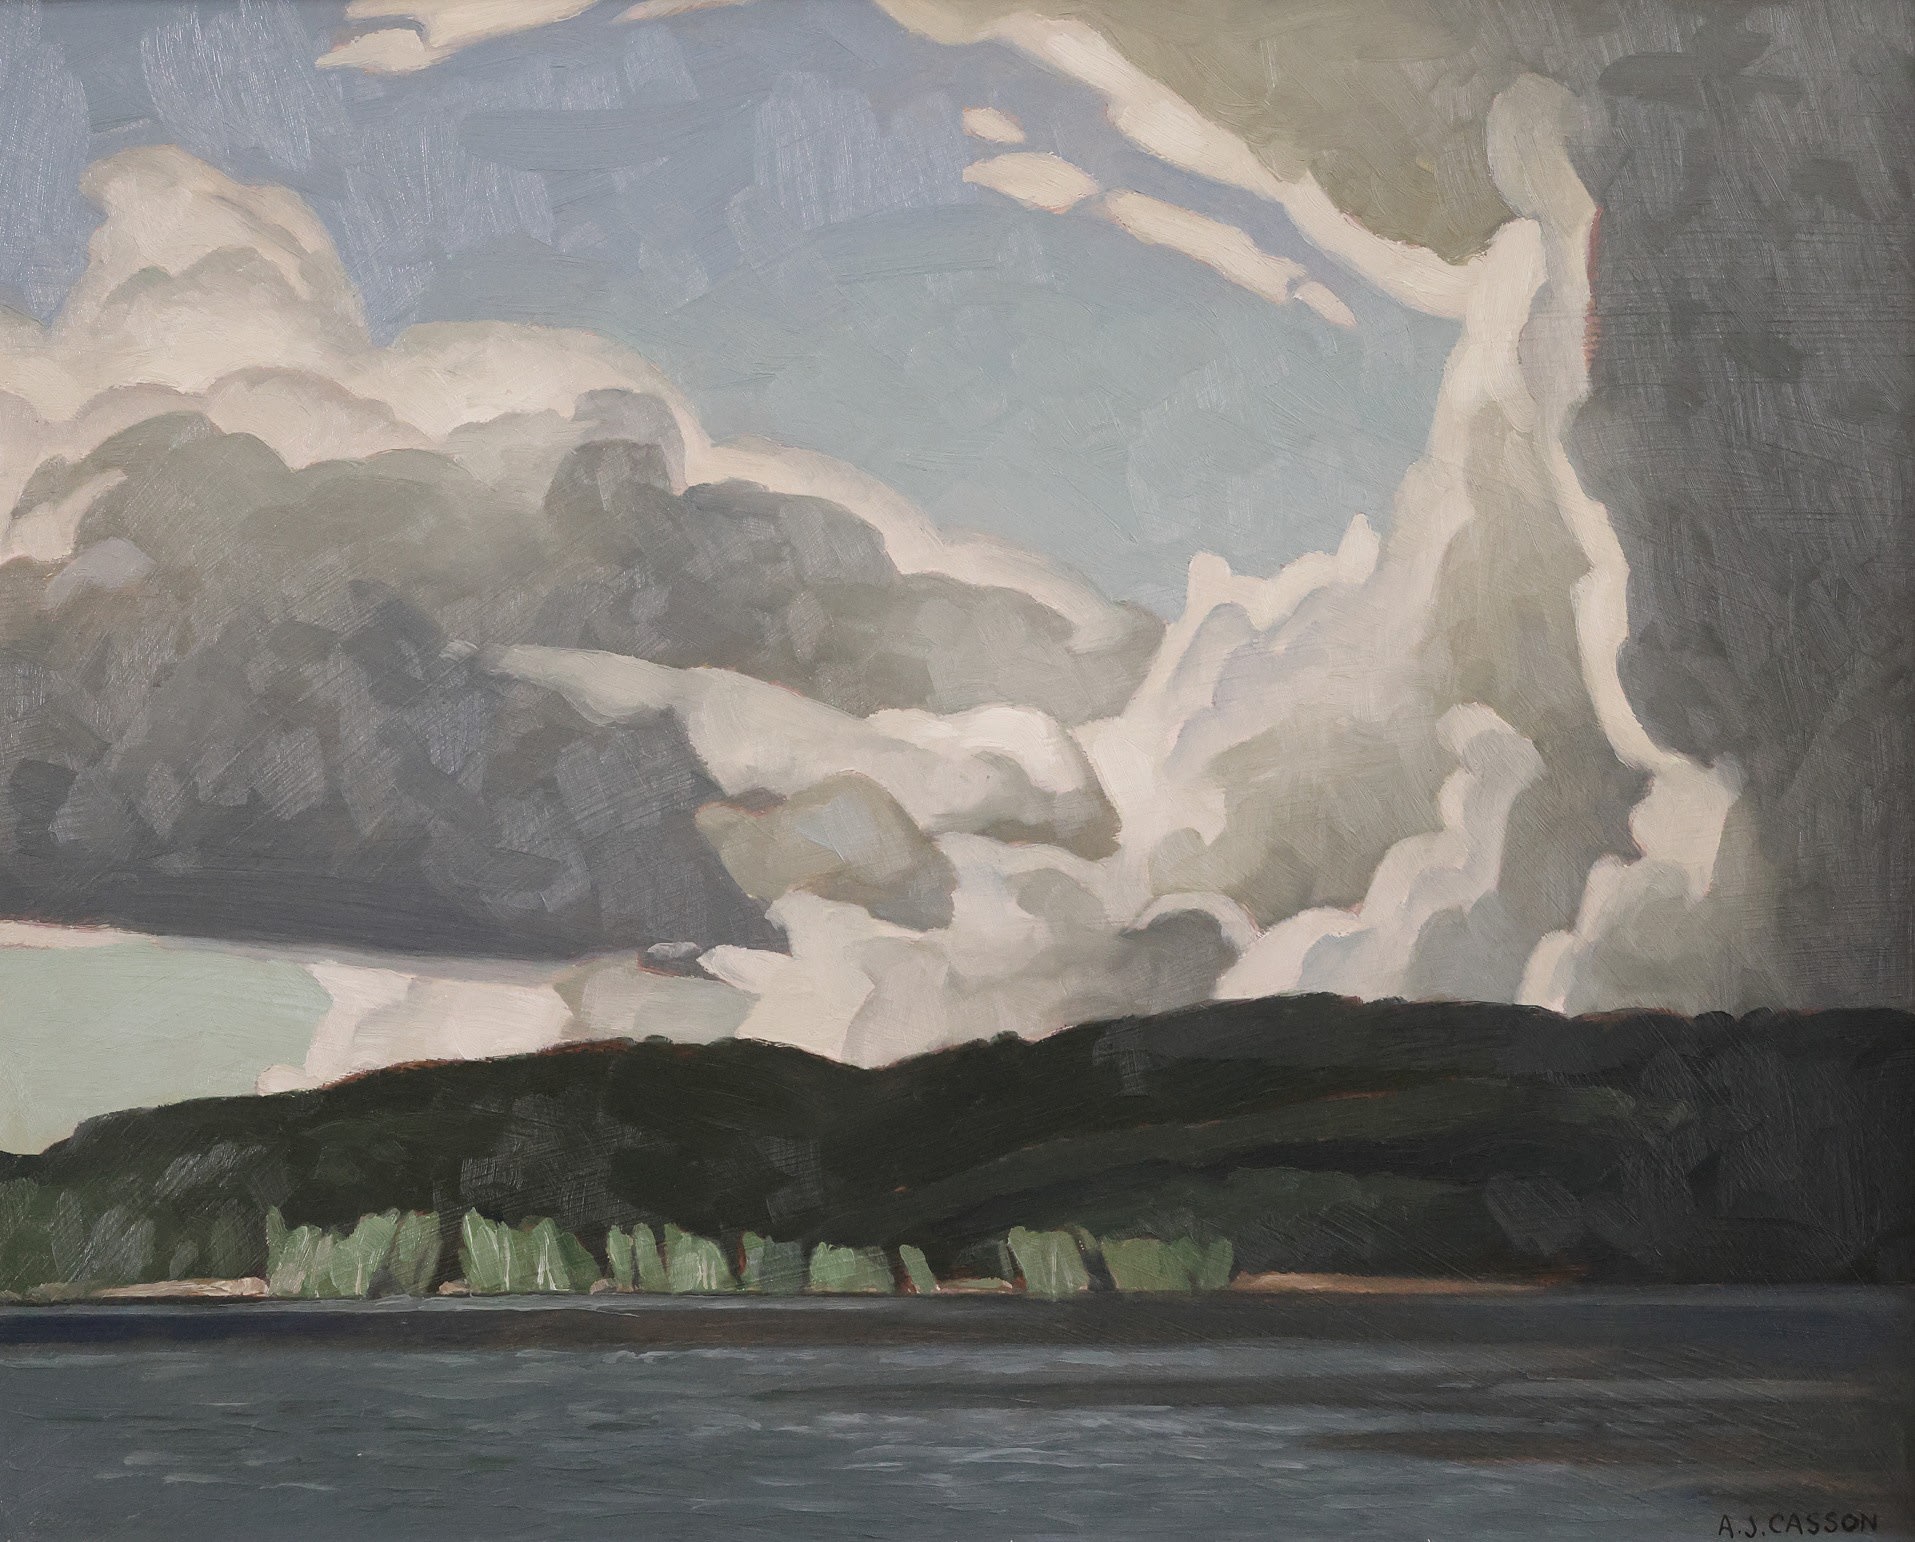 A.J. Casson; Storm Clouds, Algonquin Park